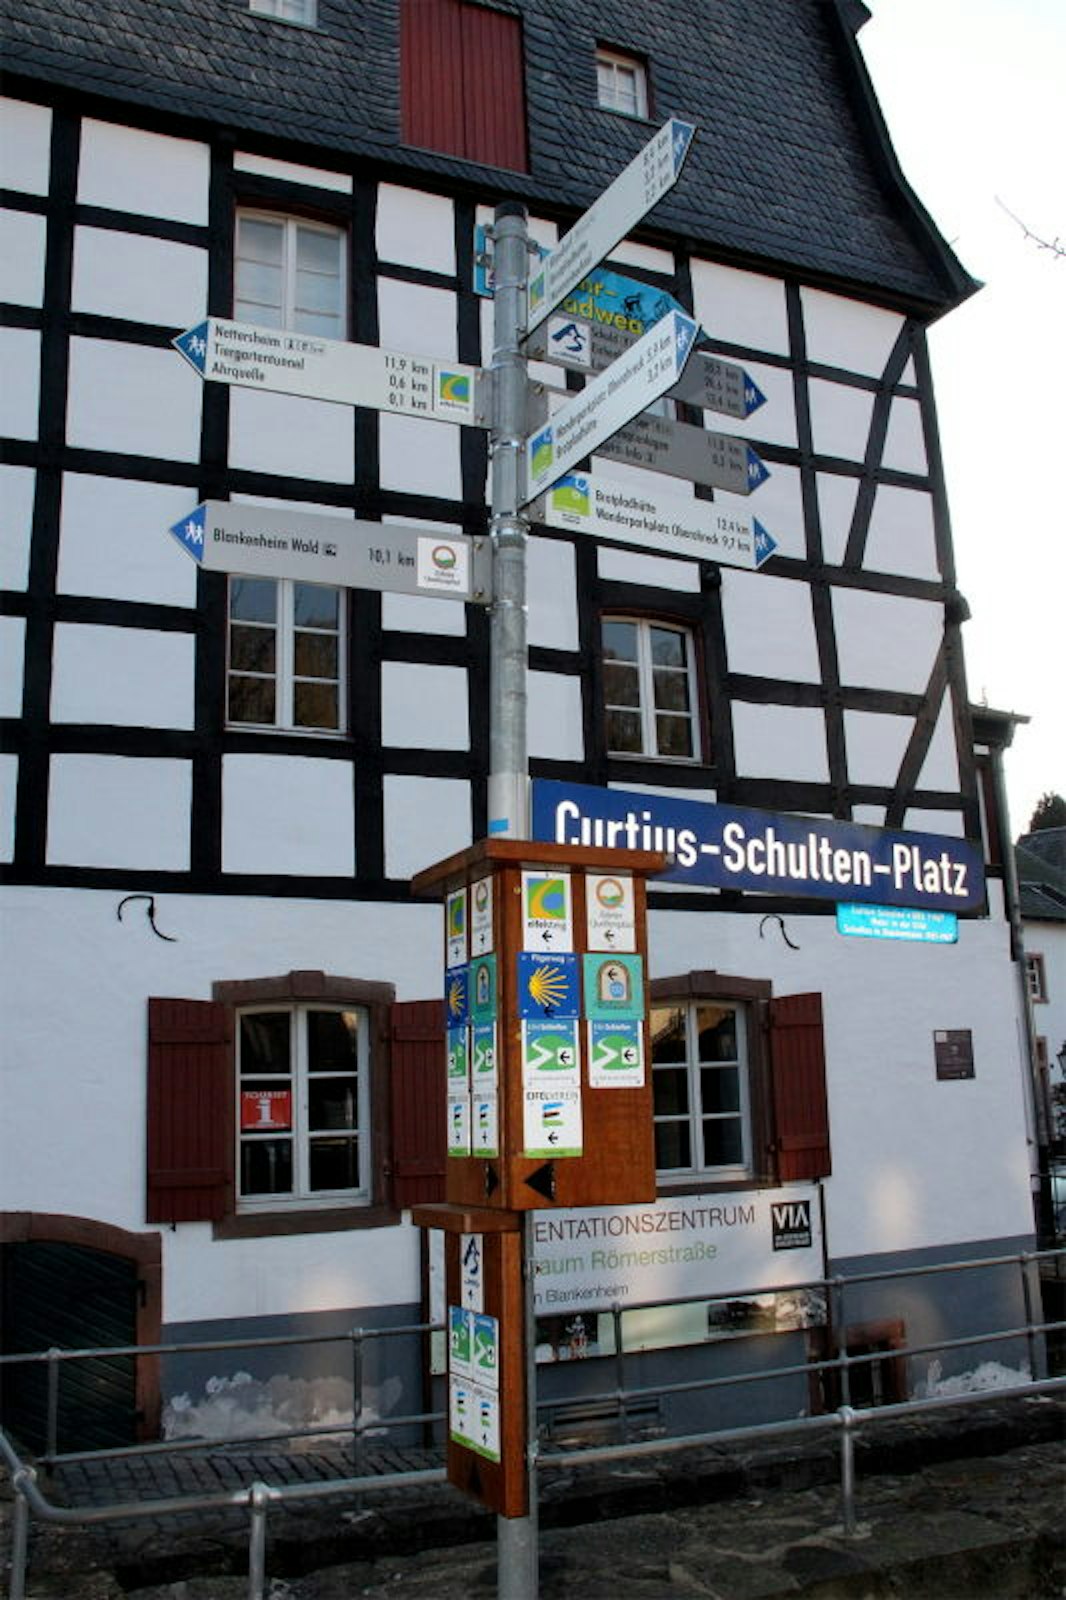 Einer der Wanderwege-Hotspots ist der Curtius-Schulten-Platz in Blankenheim. Dort treffen zahlreiche beliebte Strecken, unter anderem Ahr- und Eifelsteig, aufeinander.